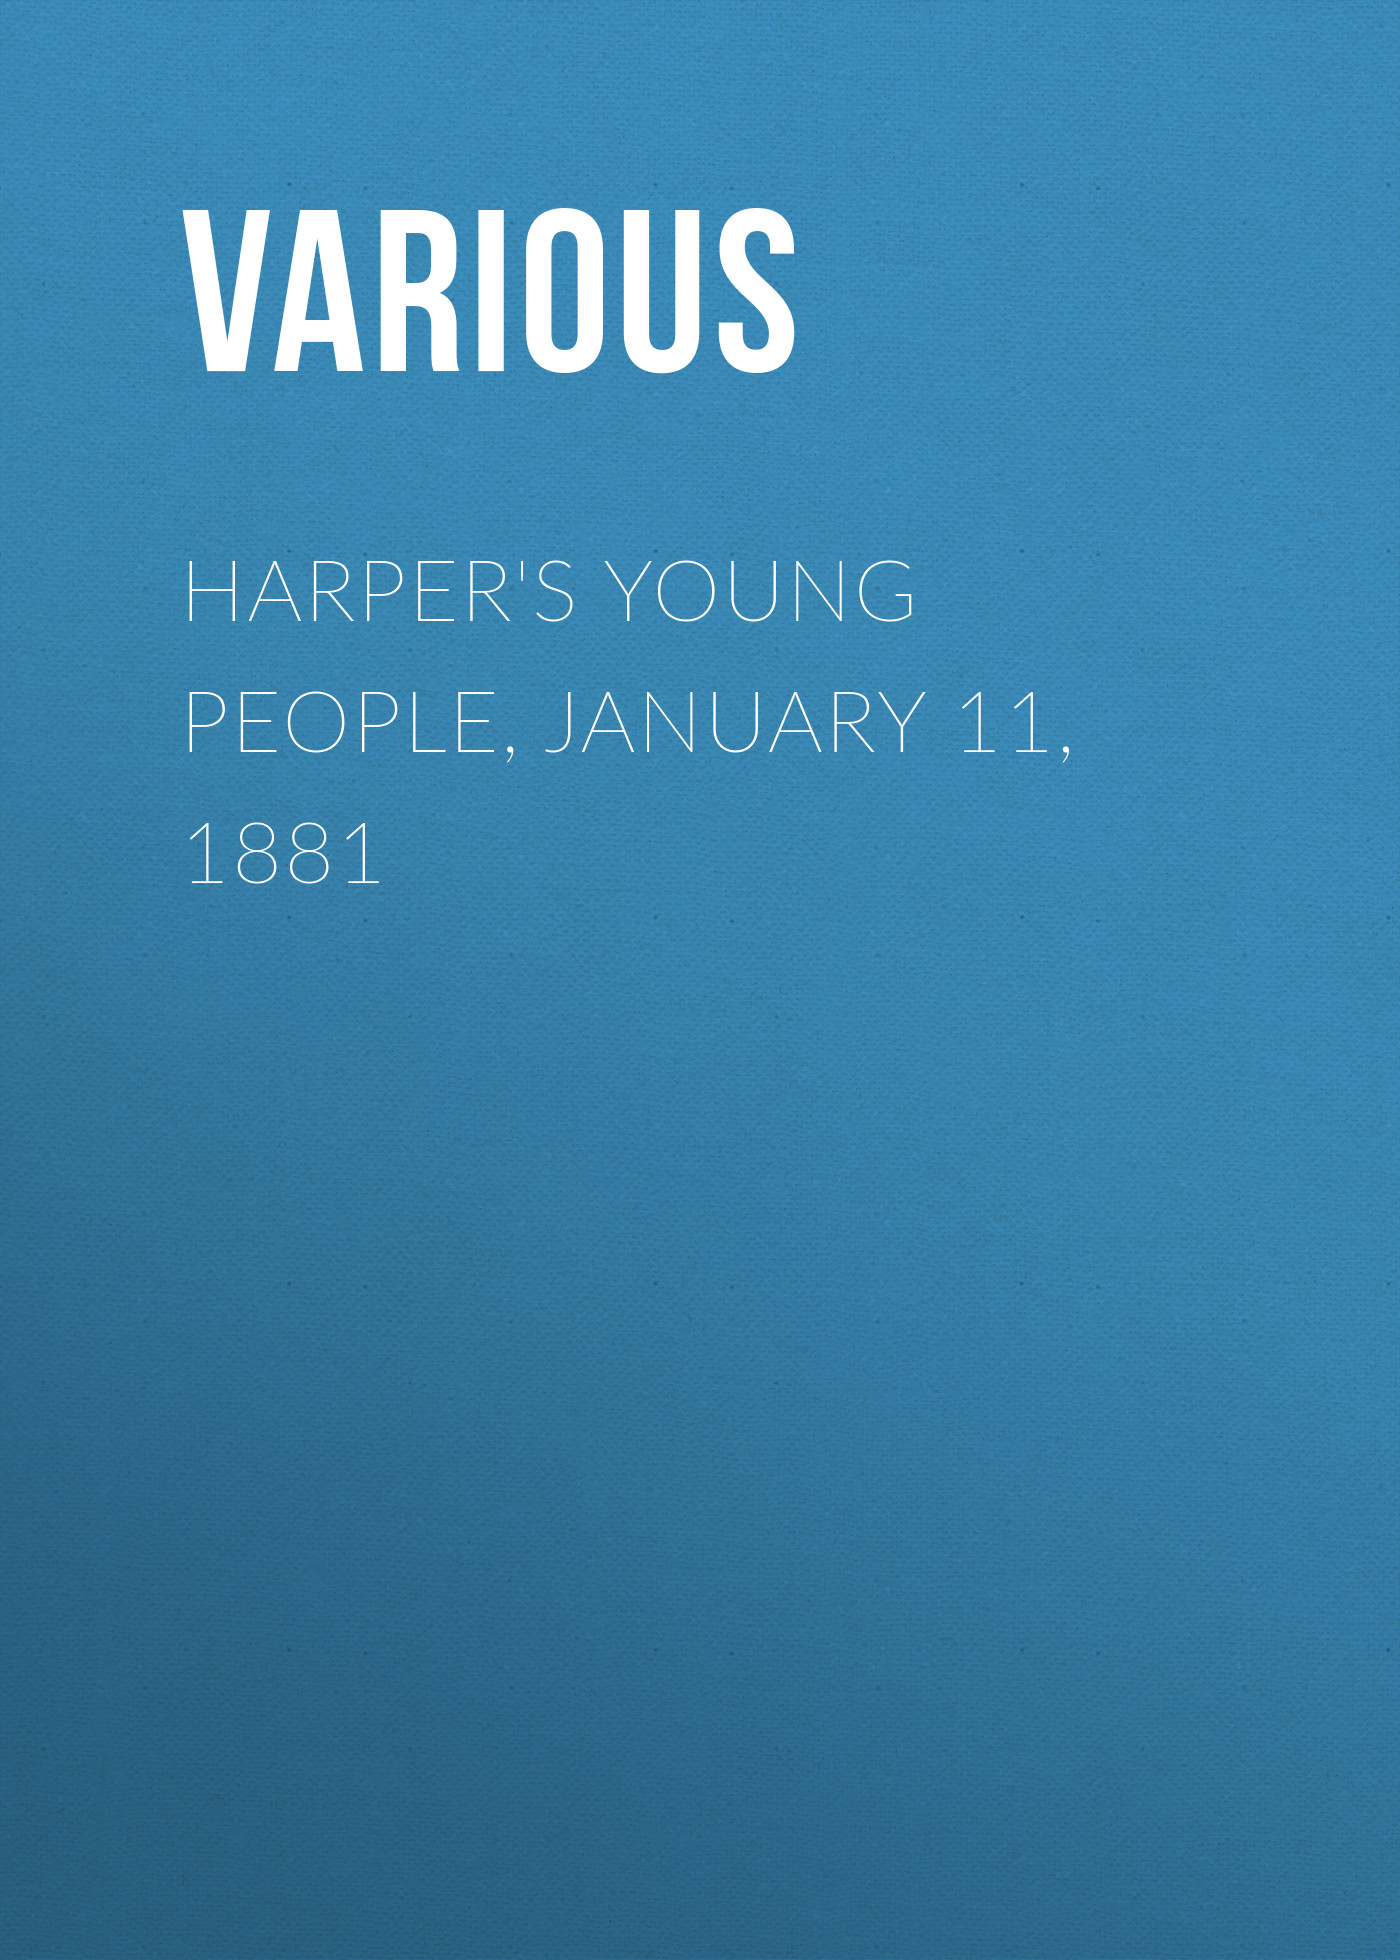 Книга Harper's Young People, January 11, 1881 из серии , созданная  Various, может относится к жанру Журналы, Зарубежная образовательная литература. Стоимость электронной книги Harper's Young People, January 11, 1881 с идентификатором 25716379 составляет 0 руб.